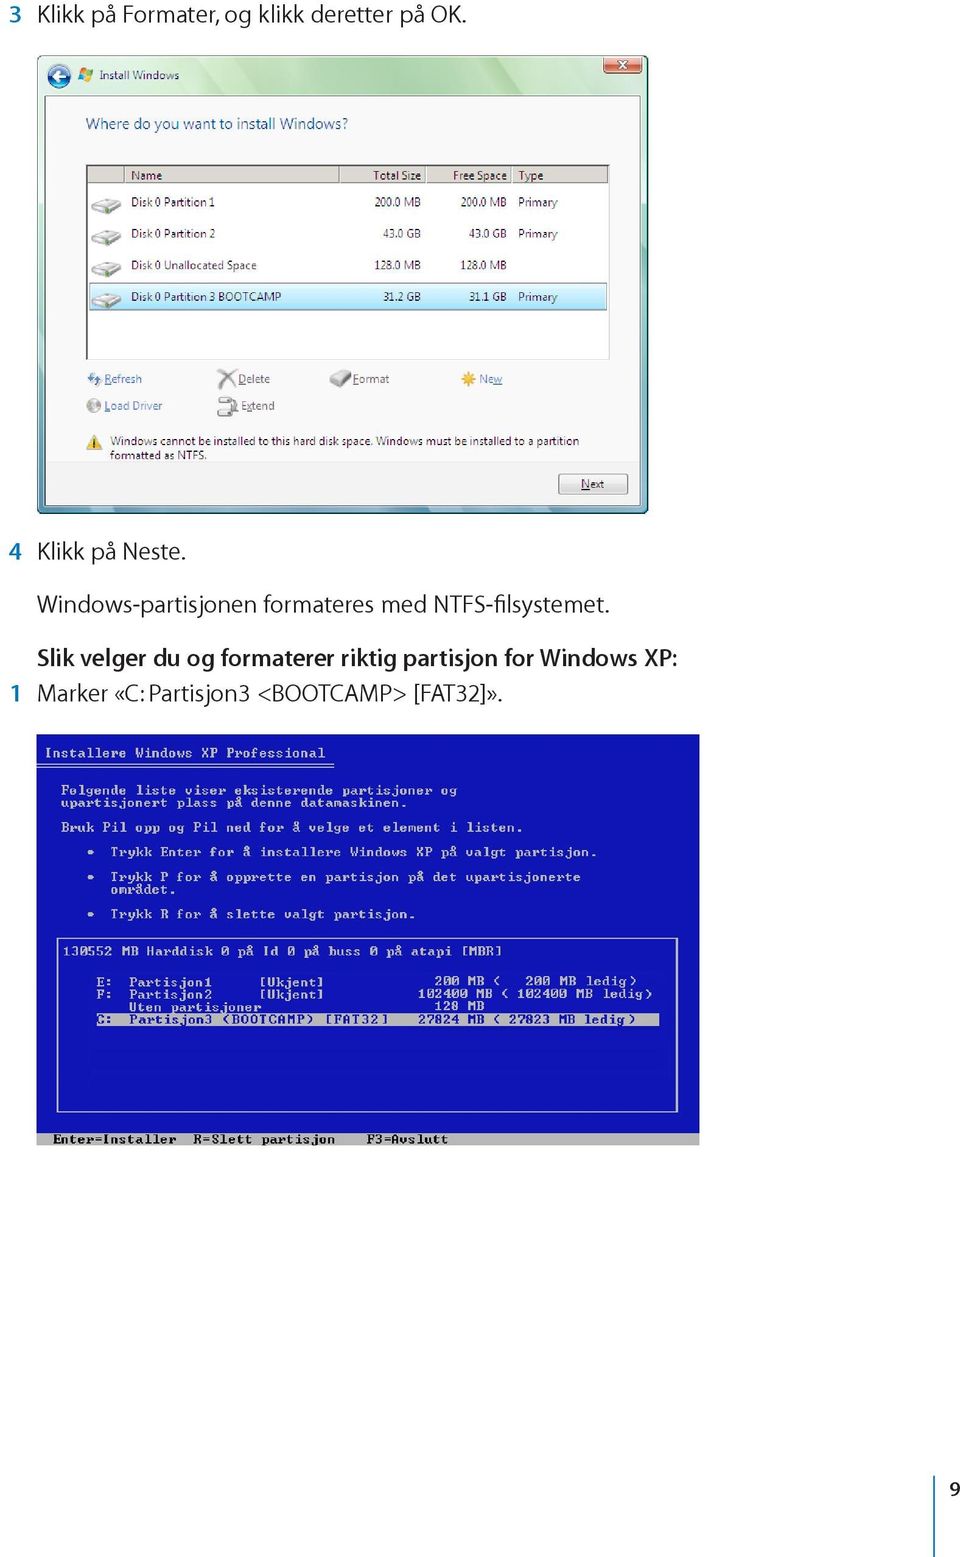 Windows-partisjonen formateres med NTFS-filsystemet.